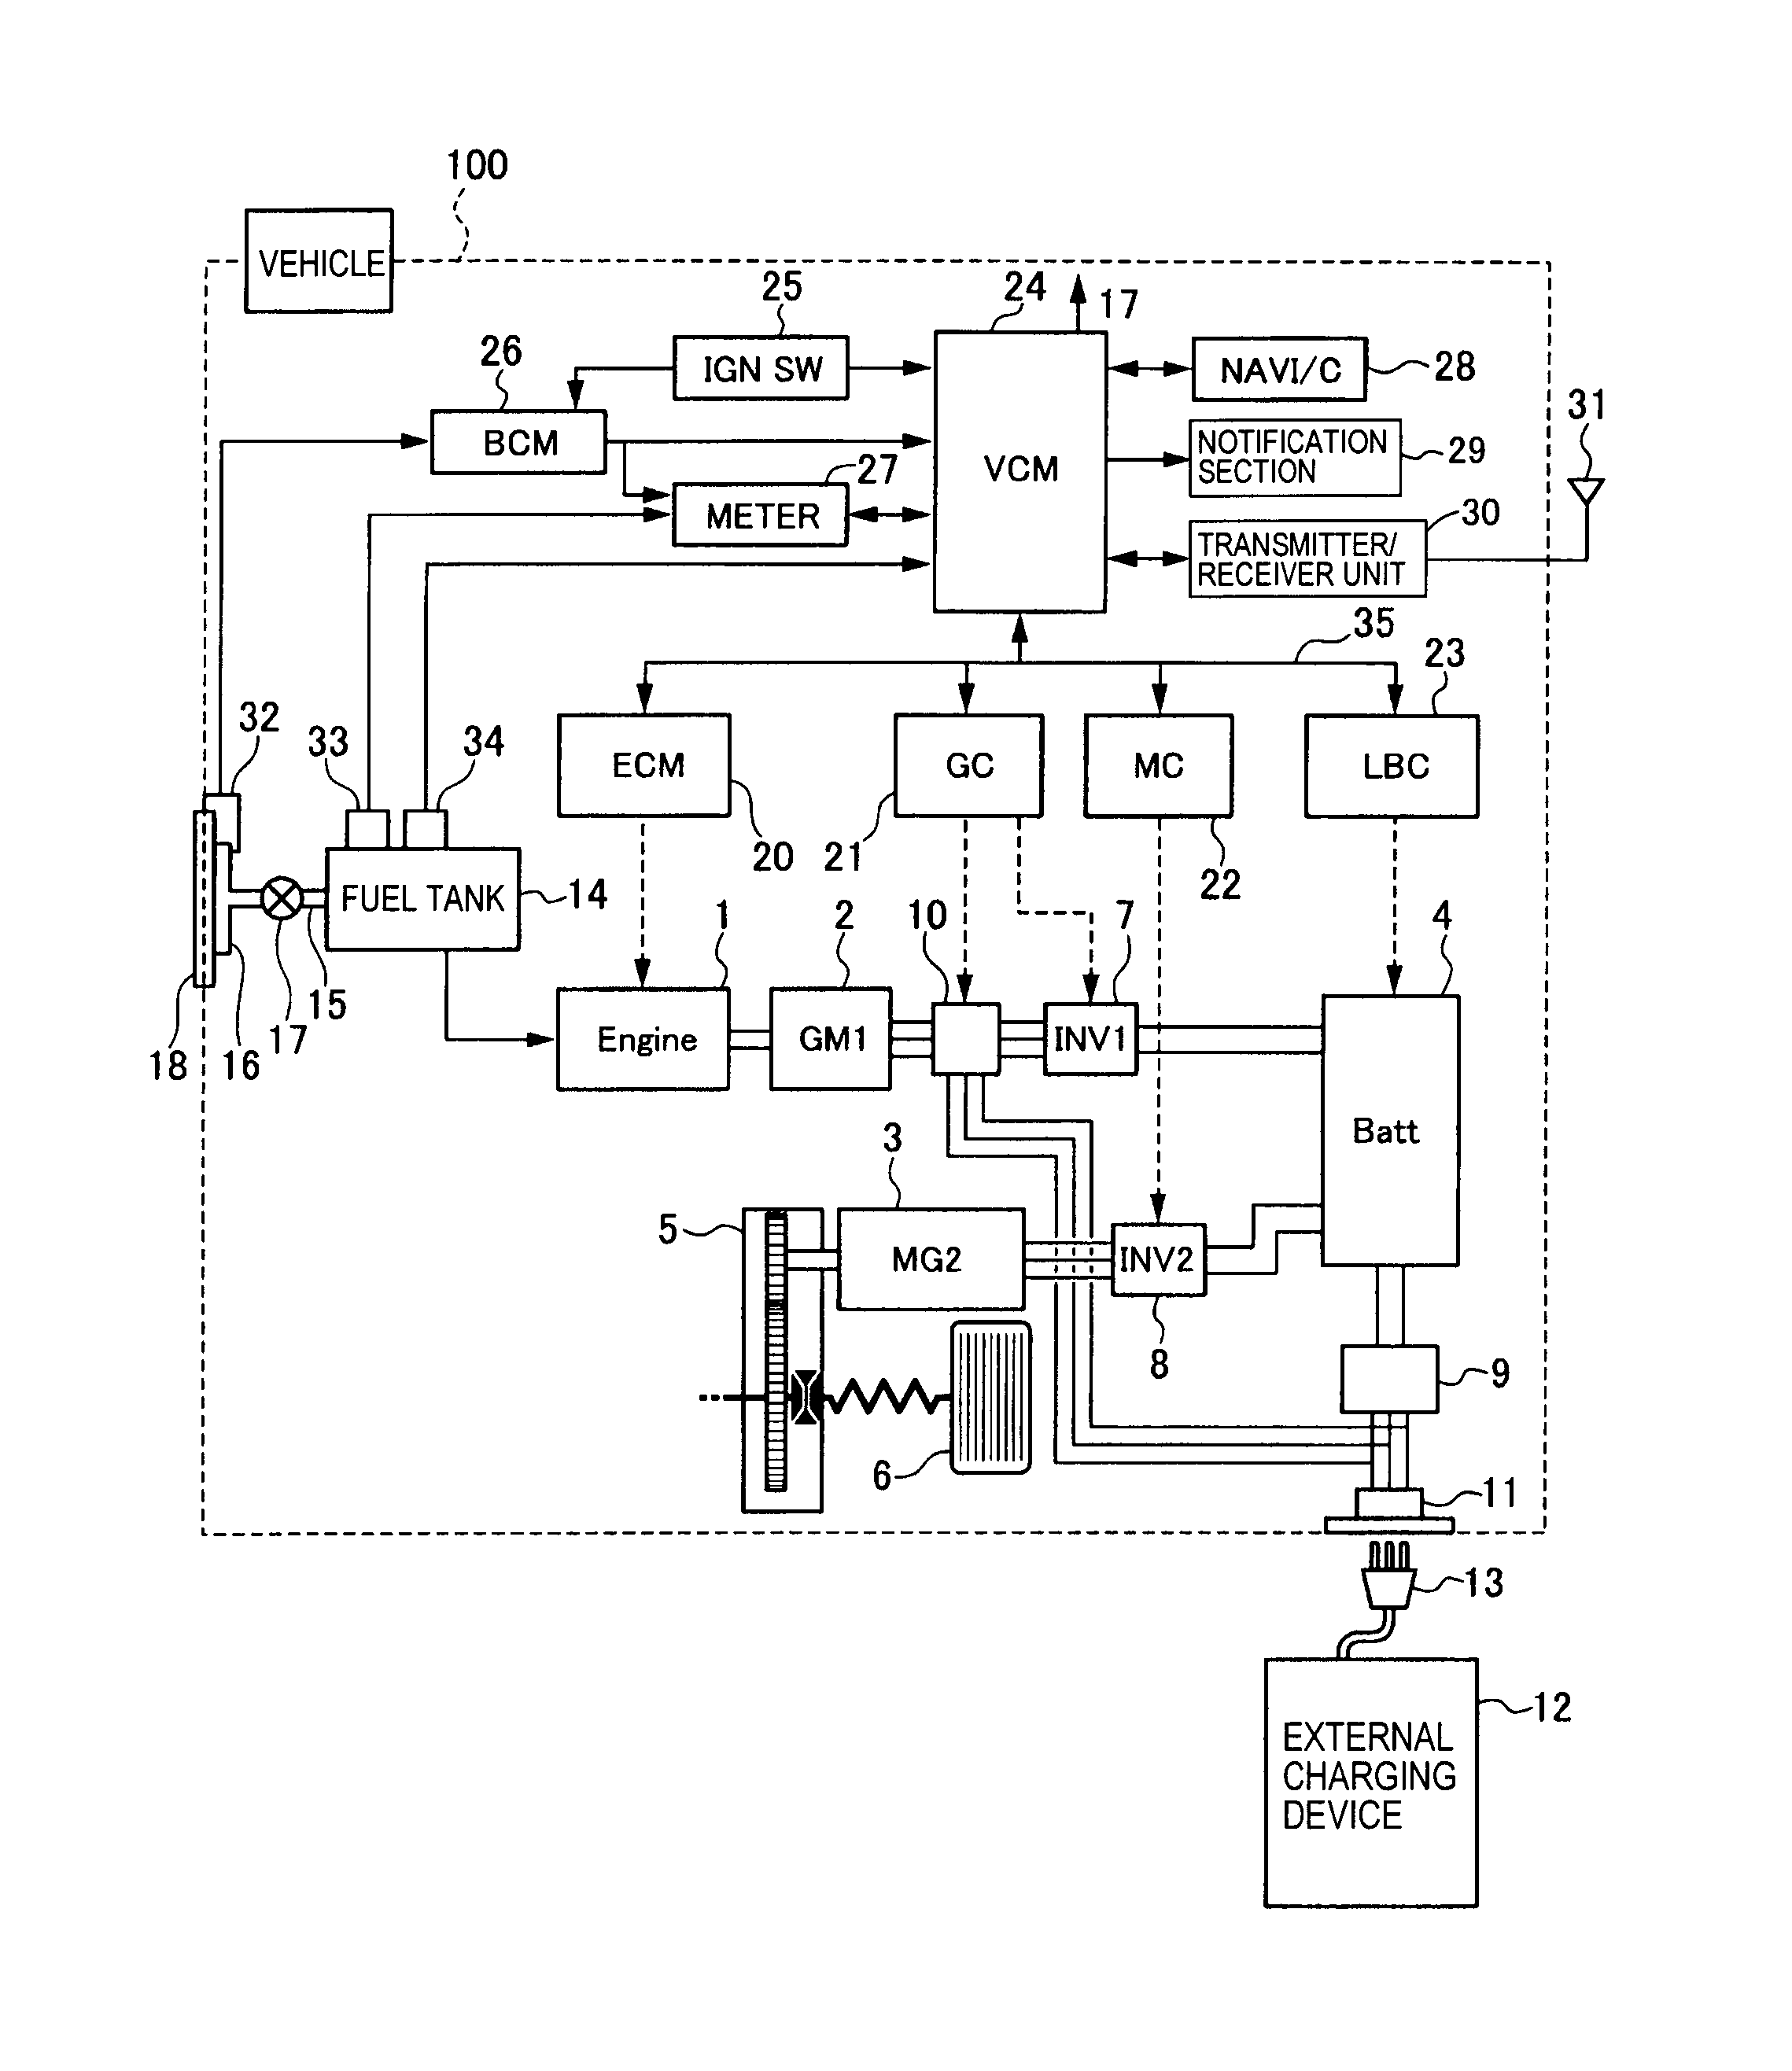 1991 5.9 deisel computer wiring diagram